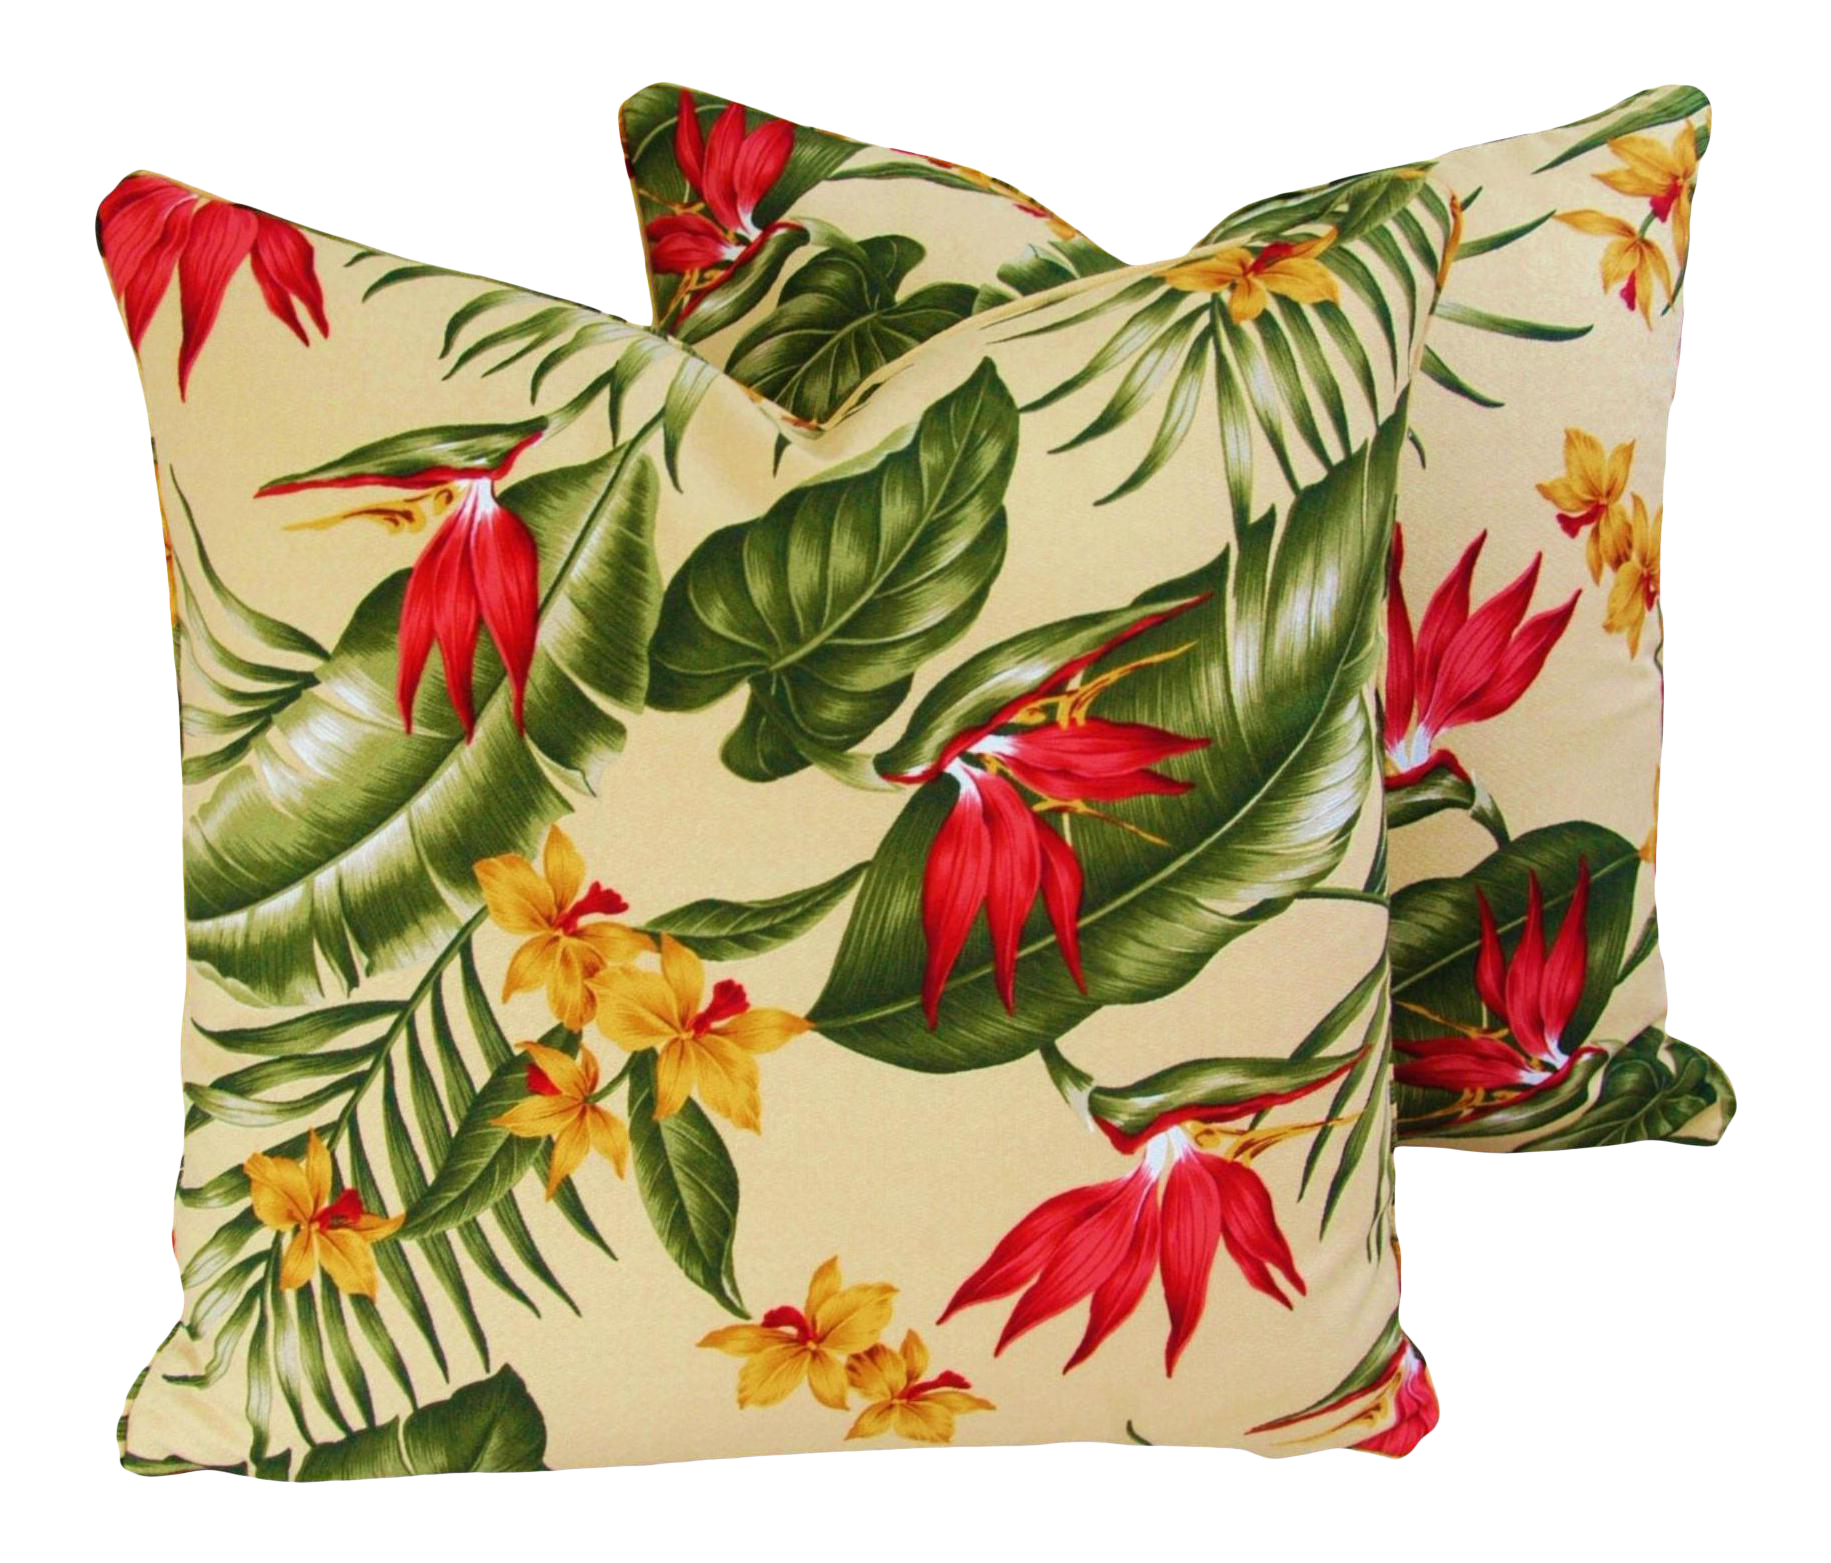 Tropical Bird Of Paradise Pillows, Pair~P77659432